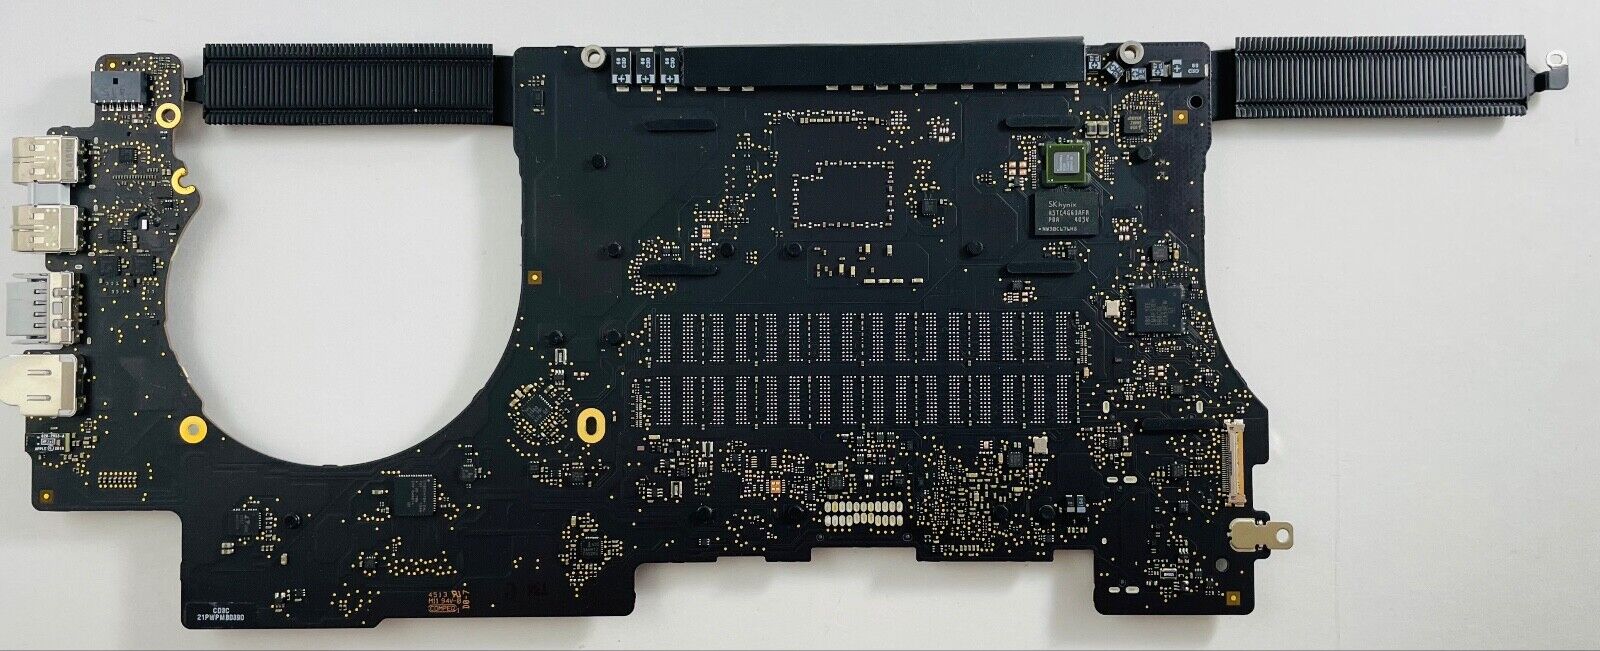 MacBook Pro 15 Retina 2.3 GHz i7 Logic Board 8gb Ram Late 2013  warranty